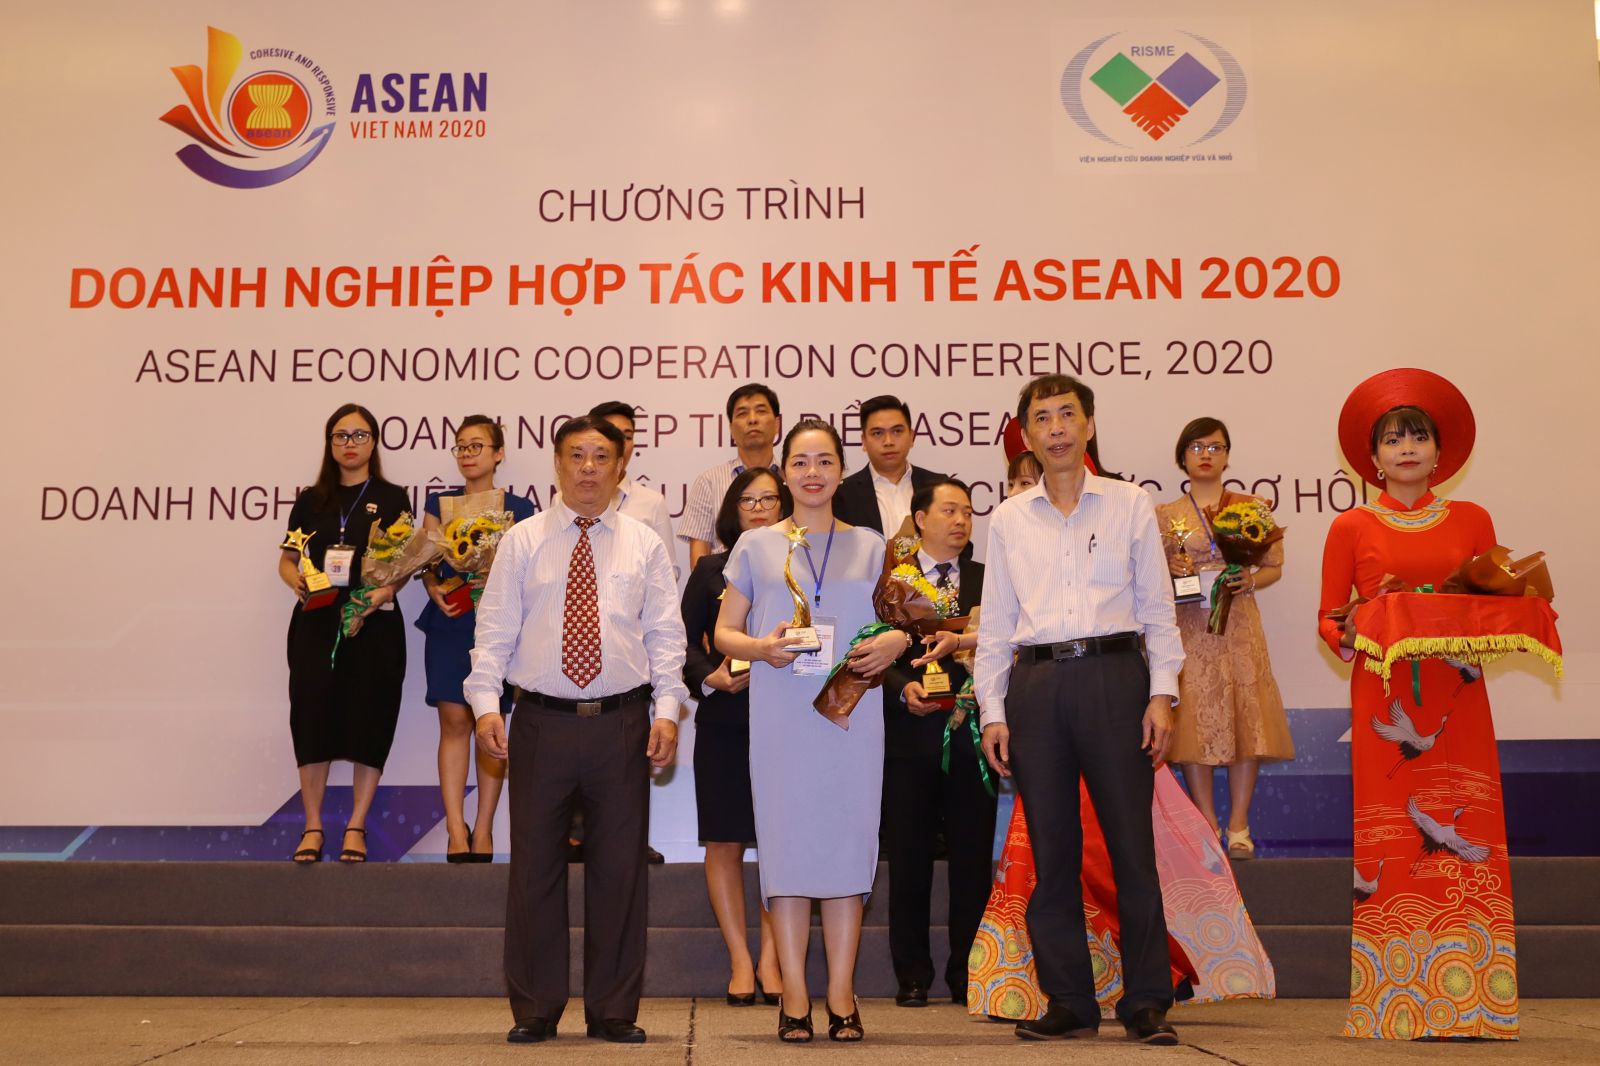 Đại diện Hải Phát Land nhận vinh danh hạng mục “Top 10 thương hiệu nổi tiếng ASEAN” tại chương trình ASEAN ECONOMIC FORUM 2020.